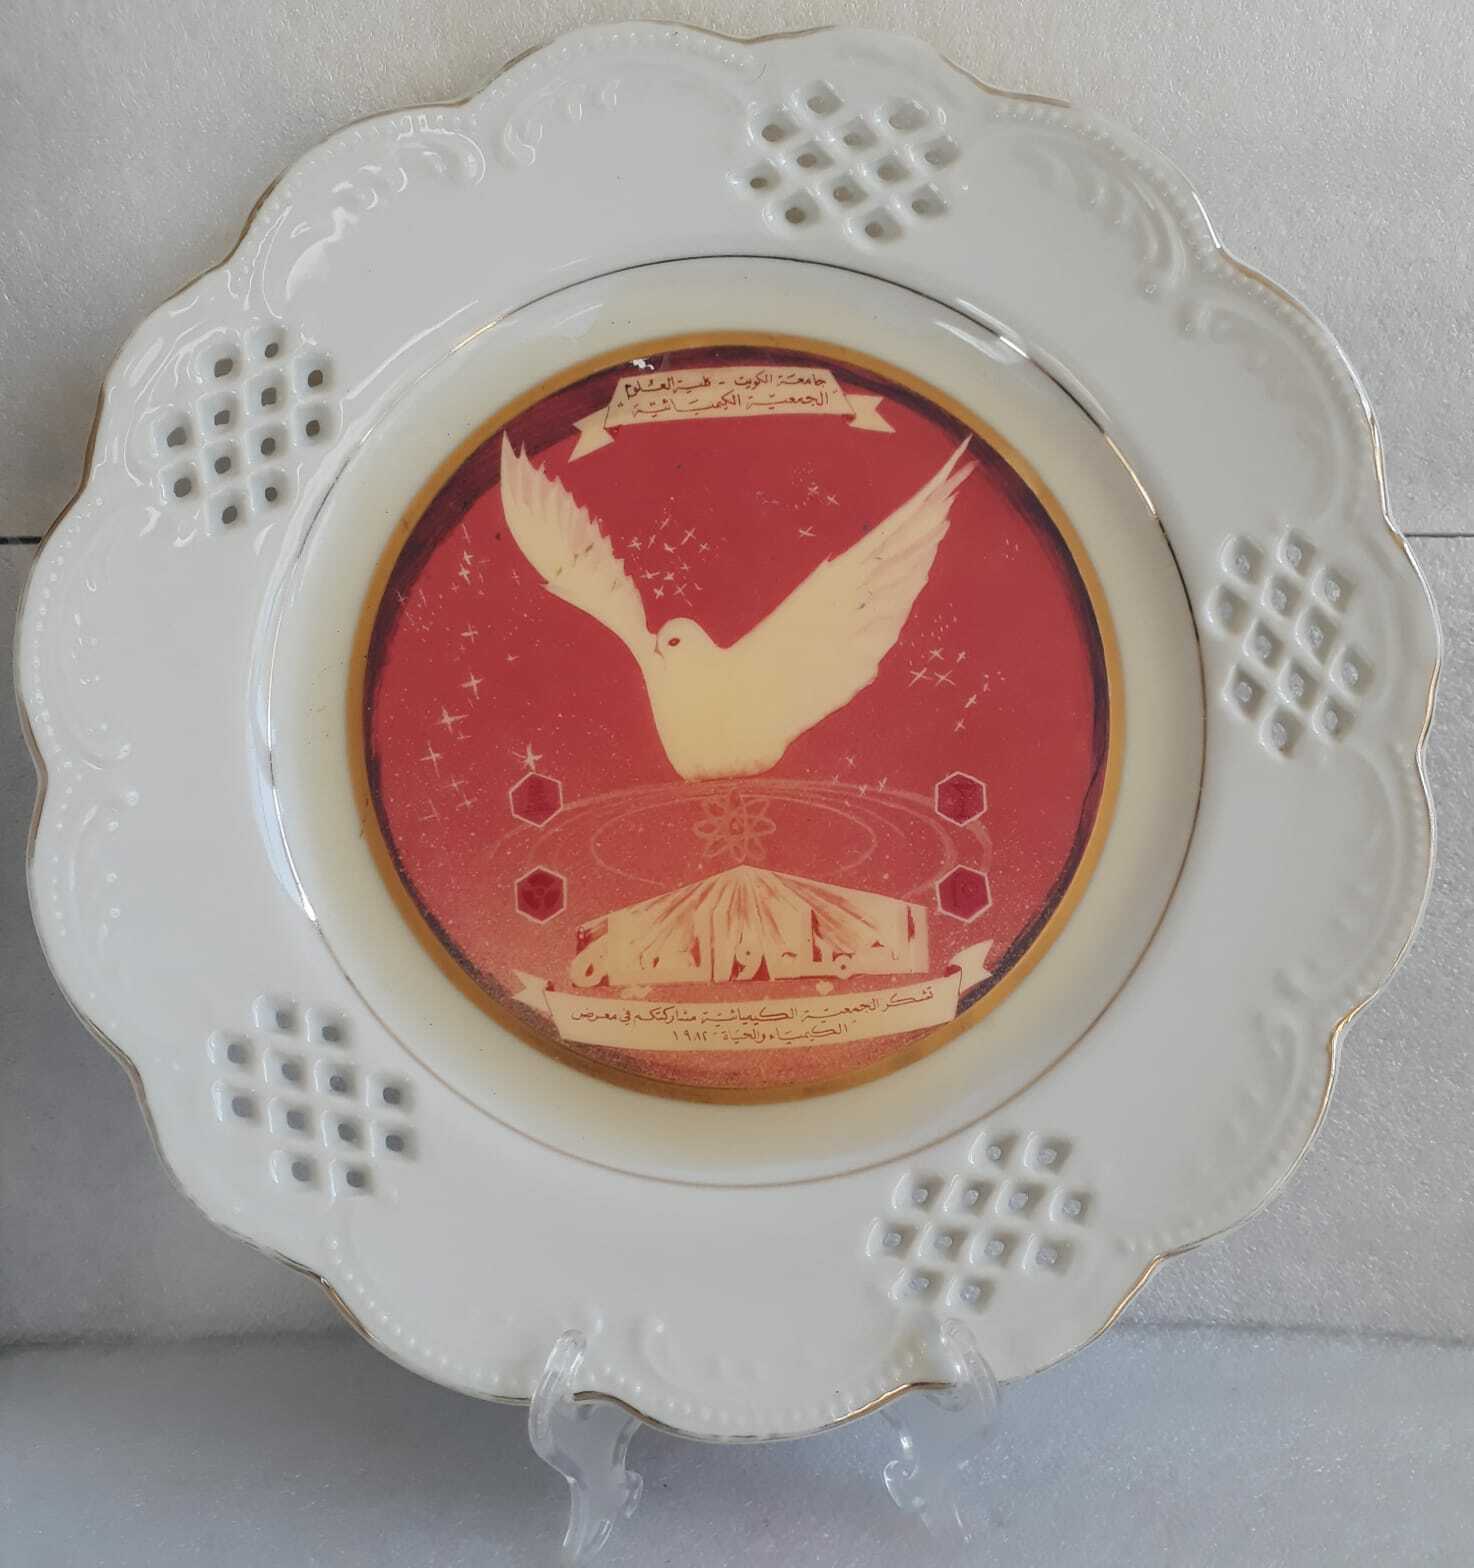 Porcelain Kuwait Kuwaiti university plate dish plaque Souvenir 1982 Vintage rare